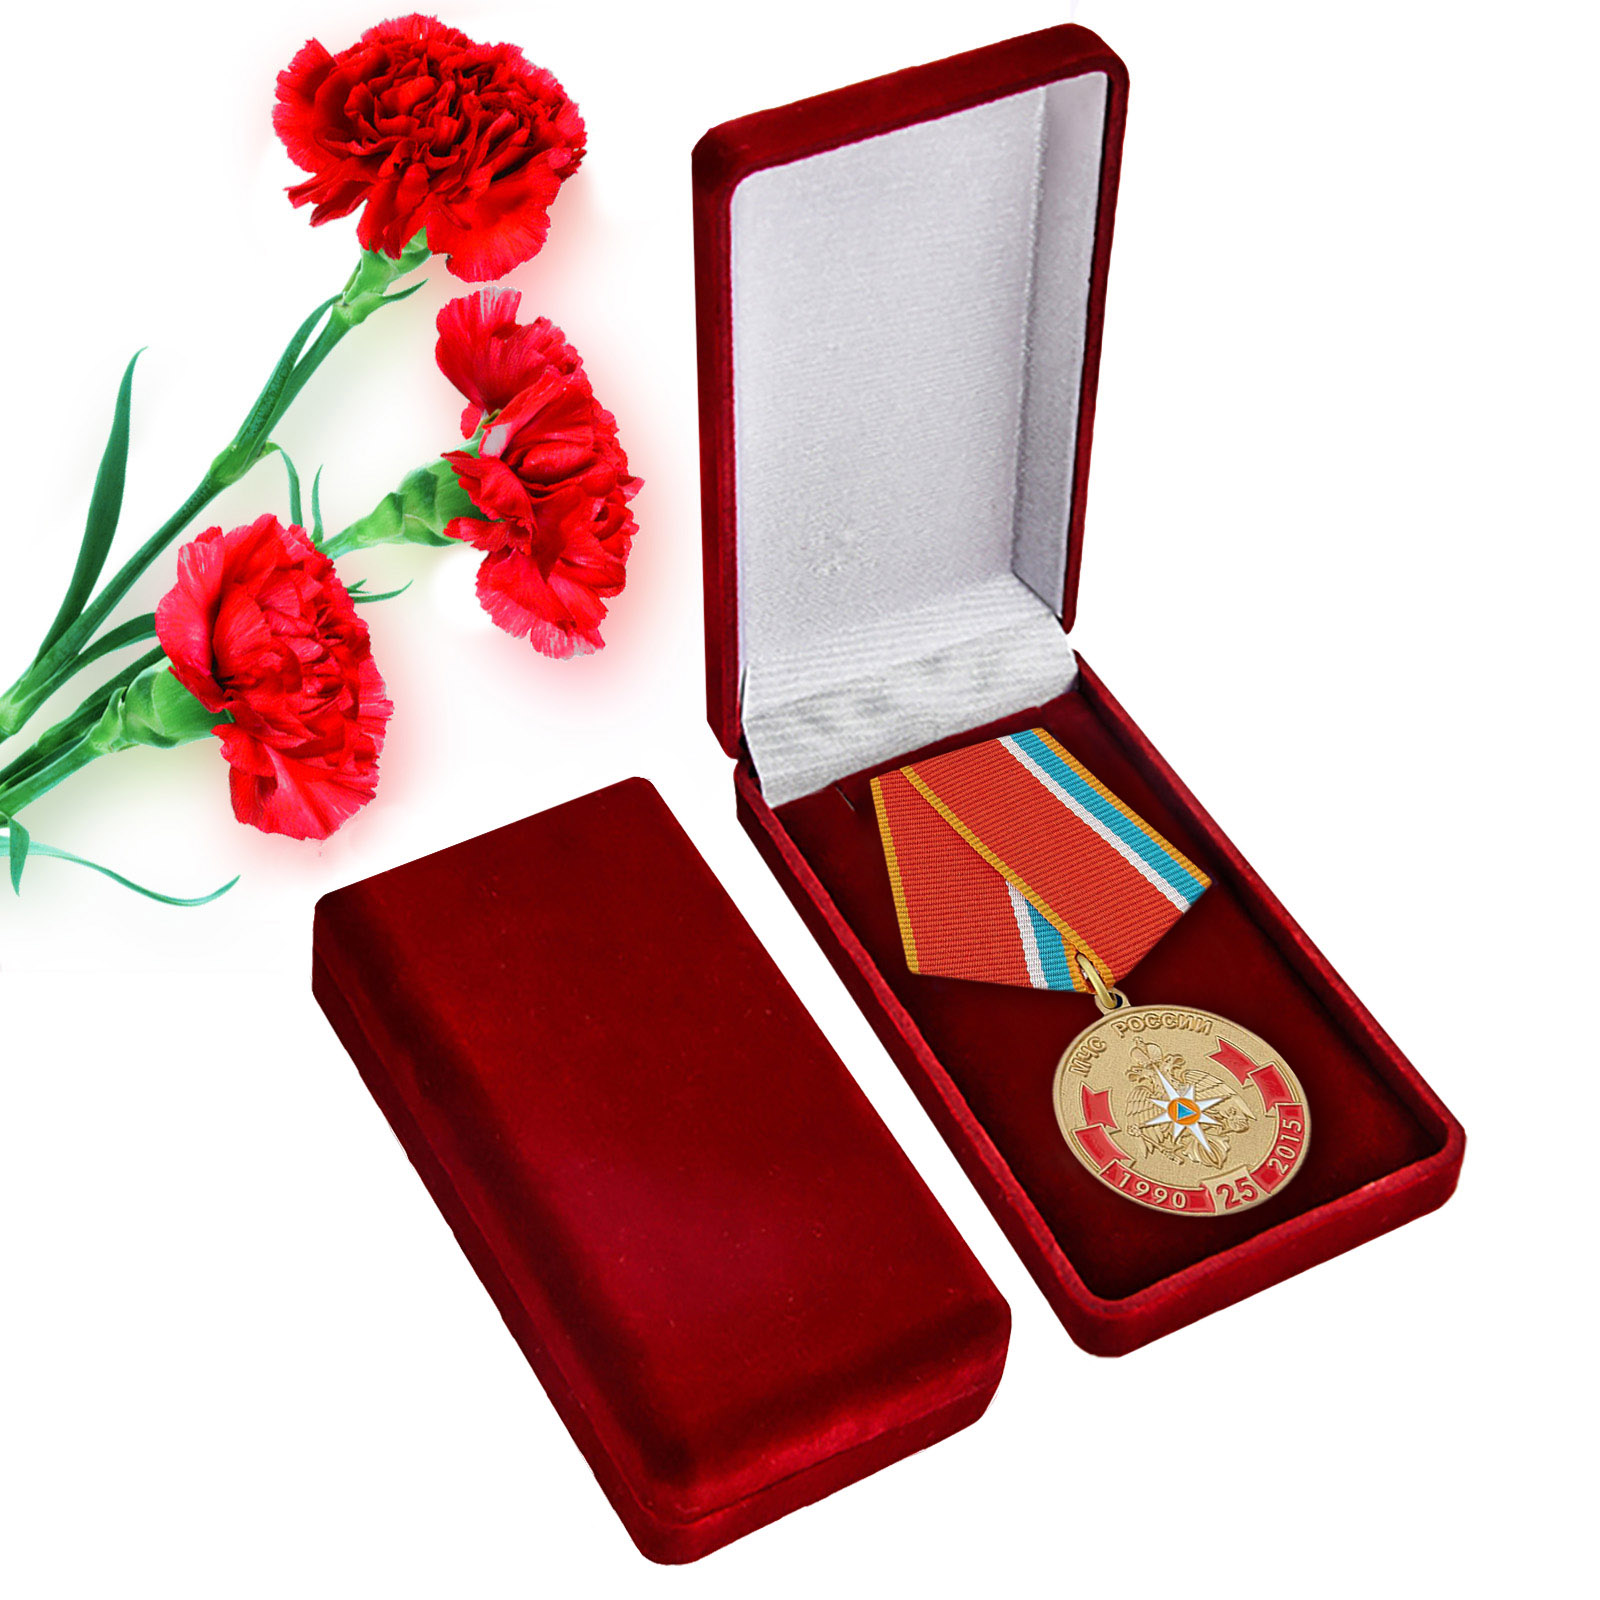 Купить наградную медаль "МЧС России 25 лет" с доставкой в ваш город